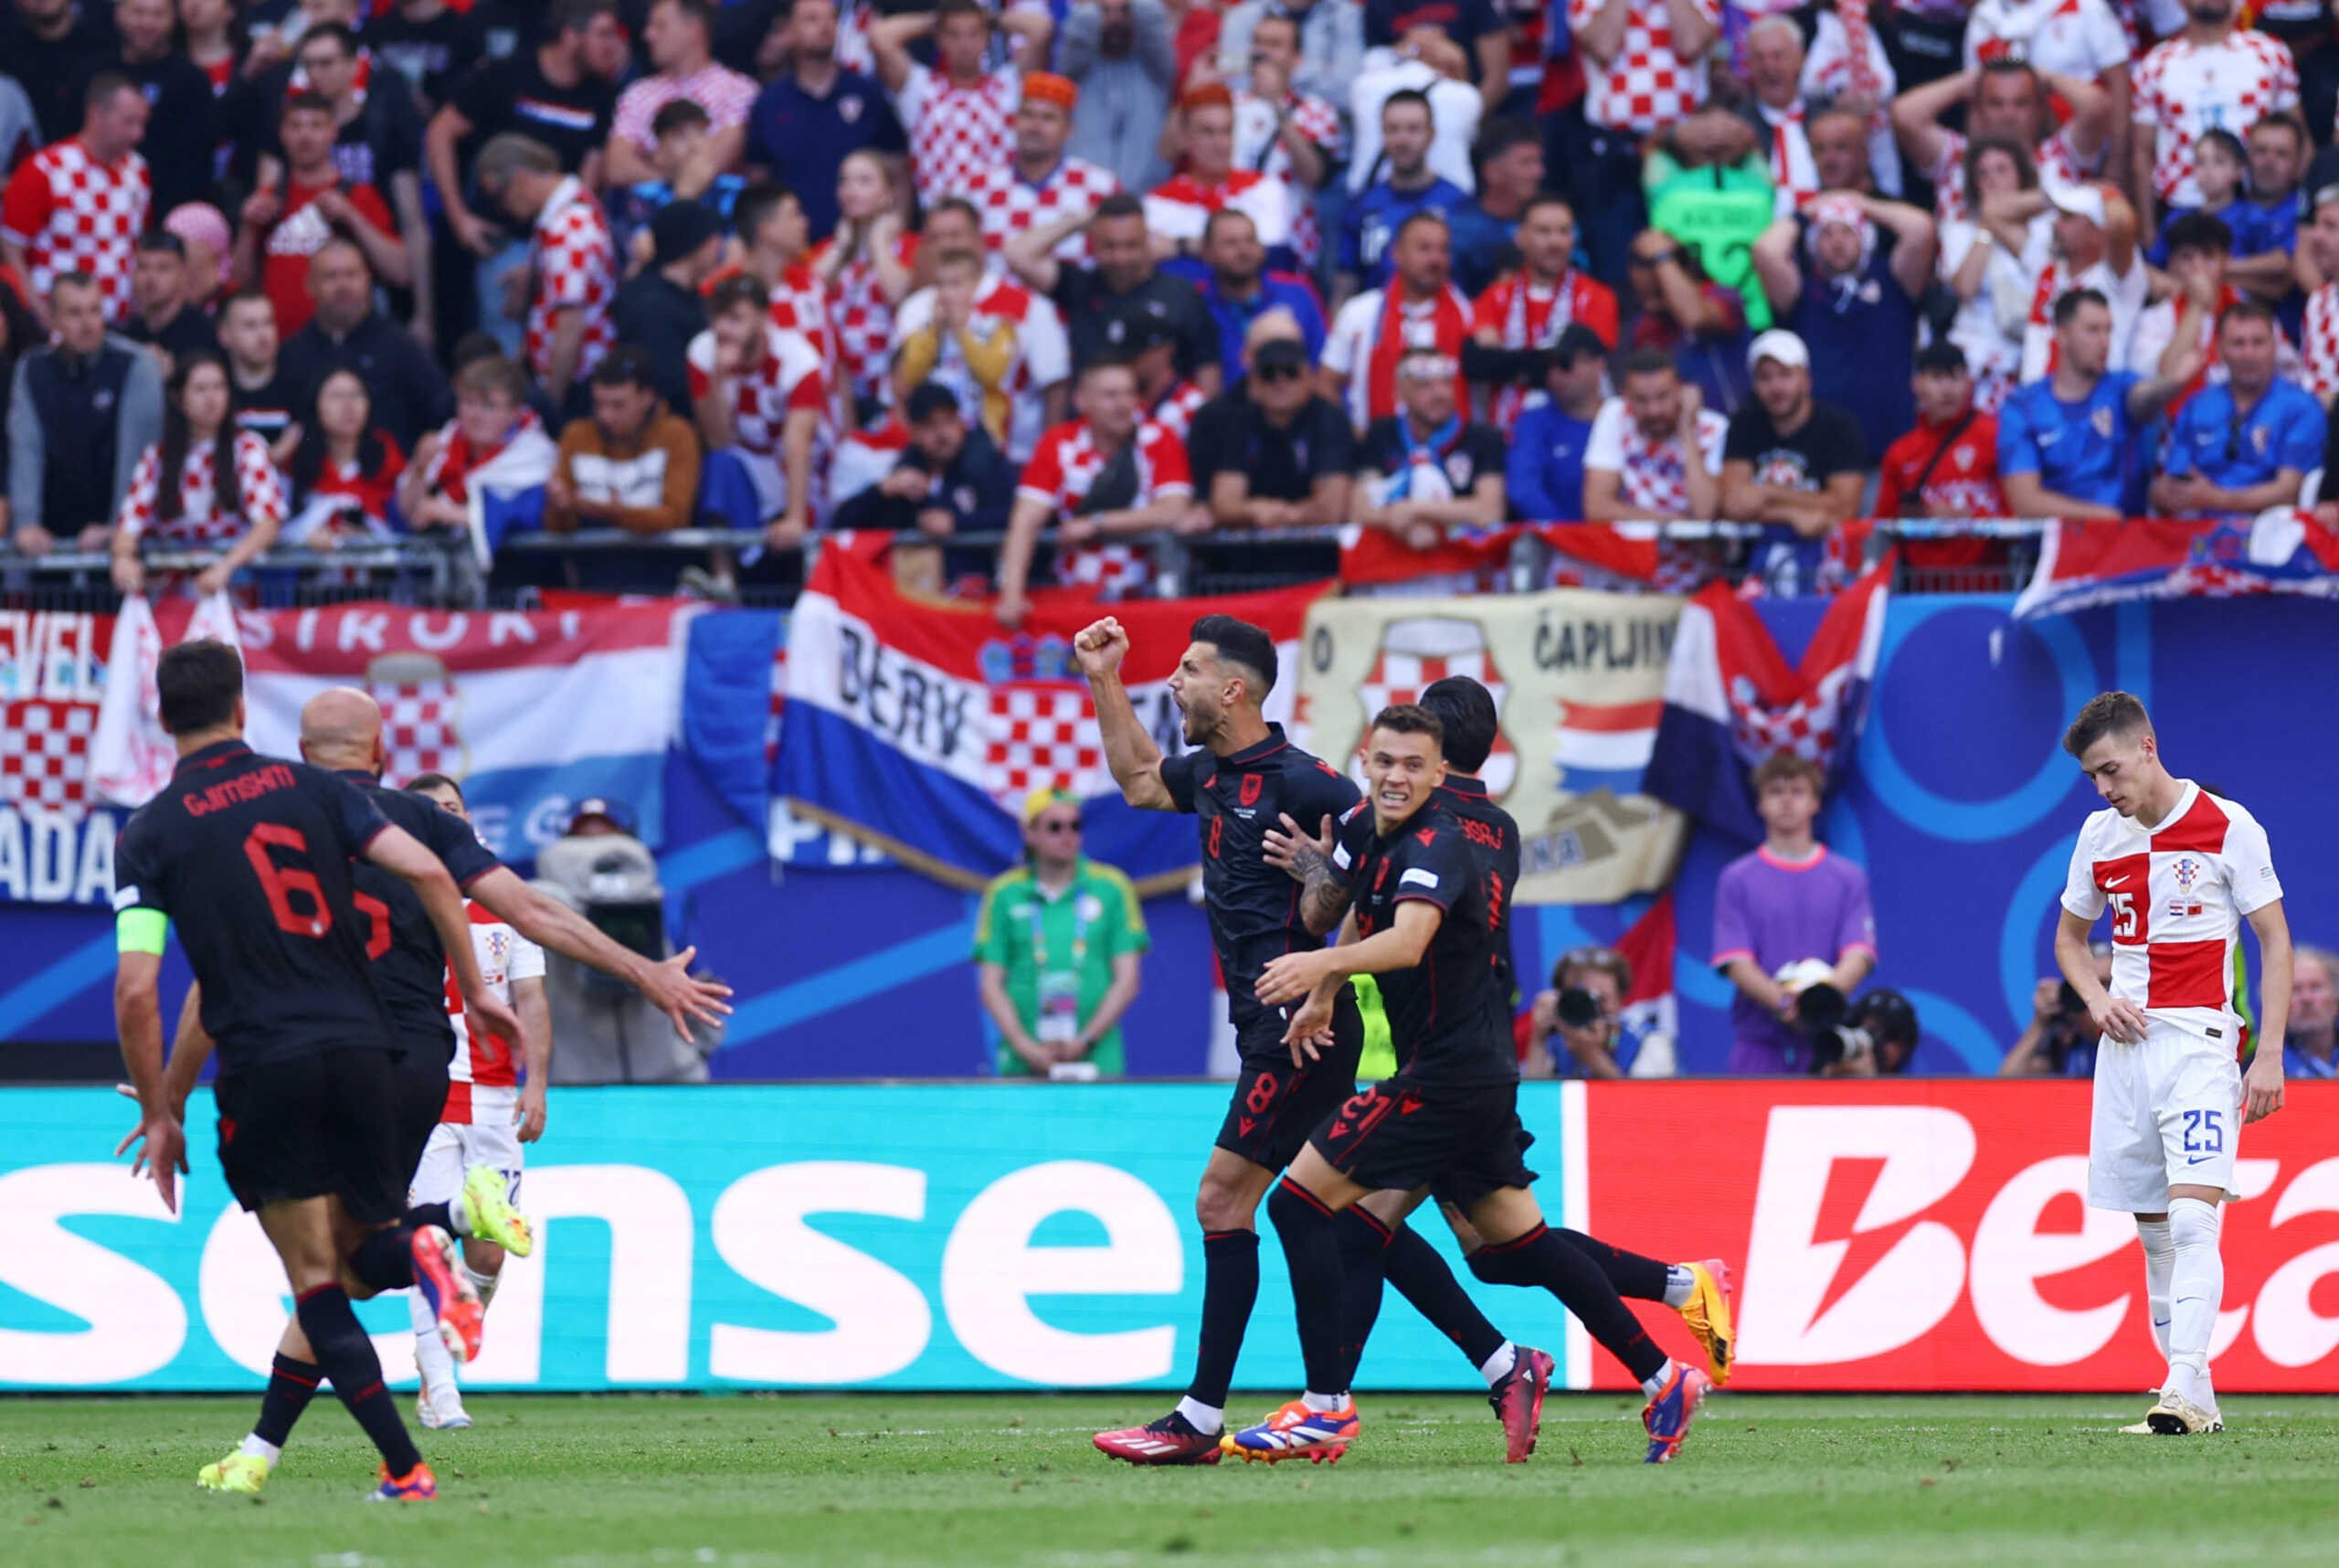 Κροατία – Αλβανία 2-2: Ισοπαλία μετά από φοβερό παιχνίδι και γκολ στις καθυστερήσεις από τους Αλβανούς